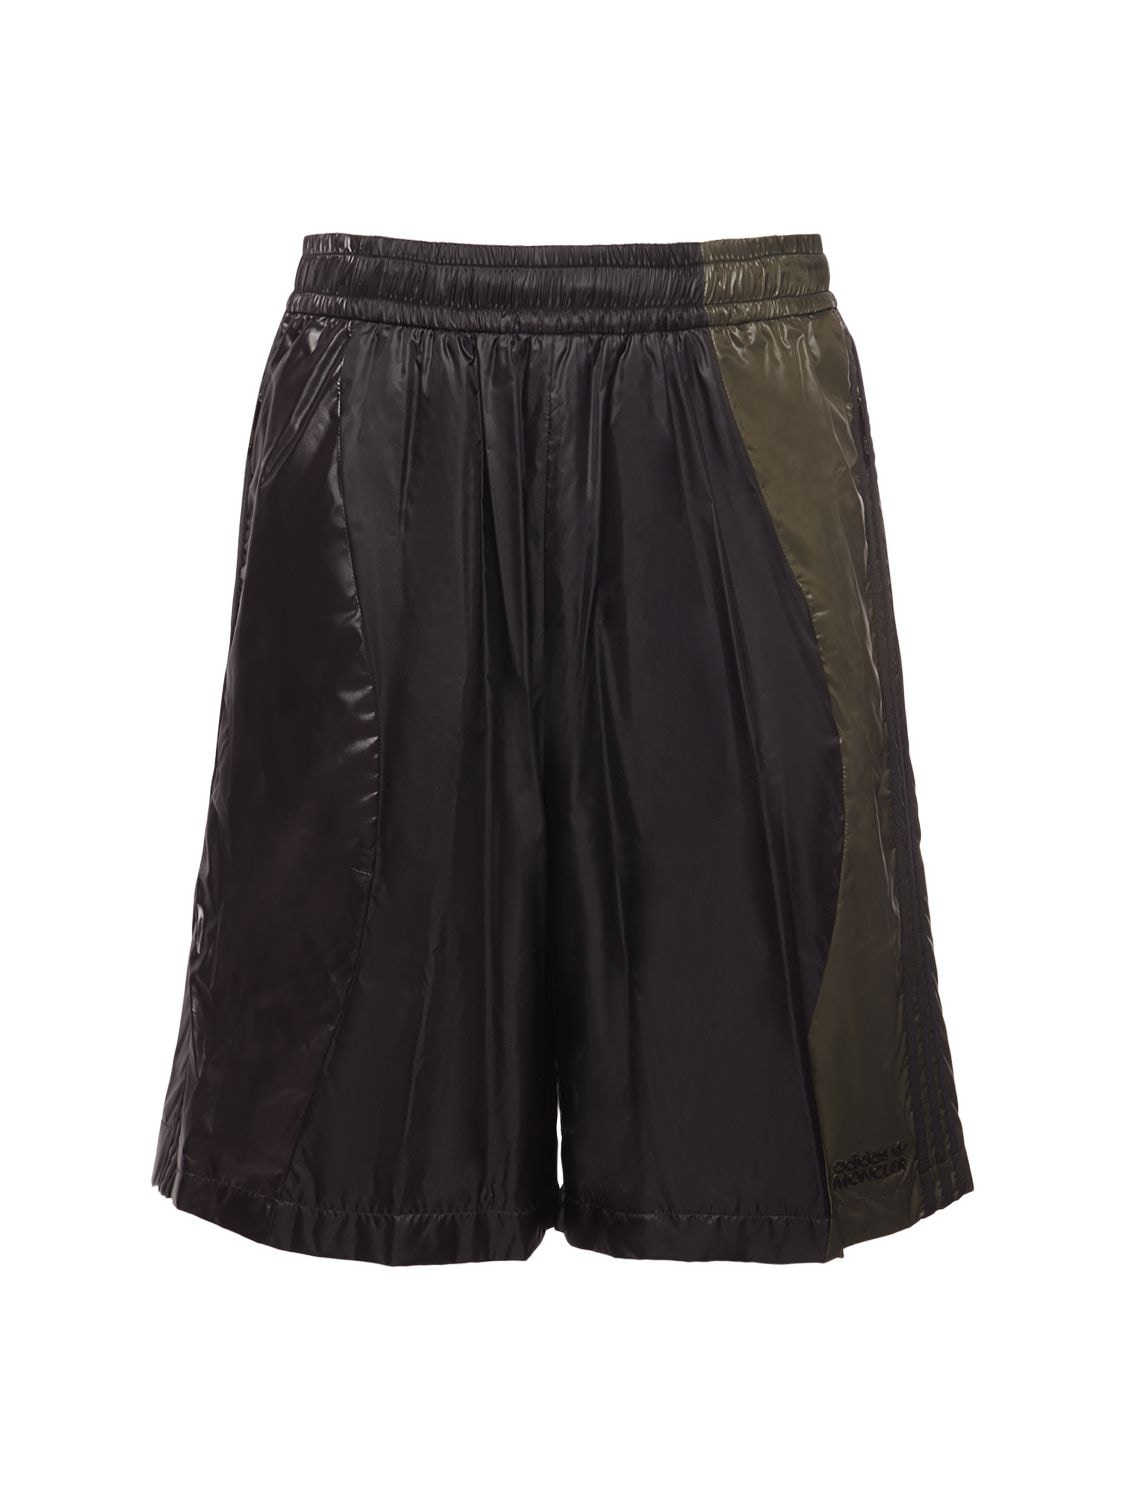 Shop Moncler Genius Moncler X Adidas Nylon Sweat Shorts In Black,green